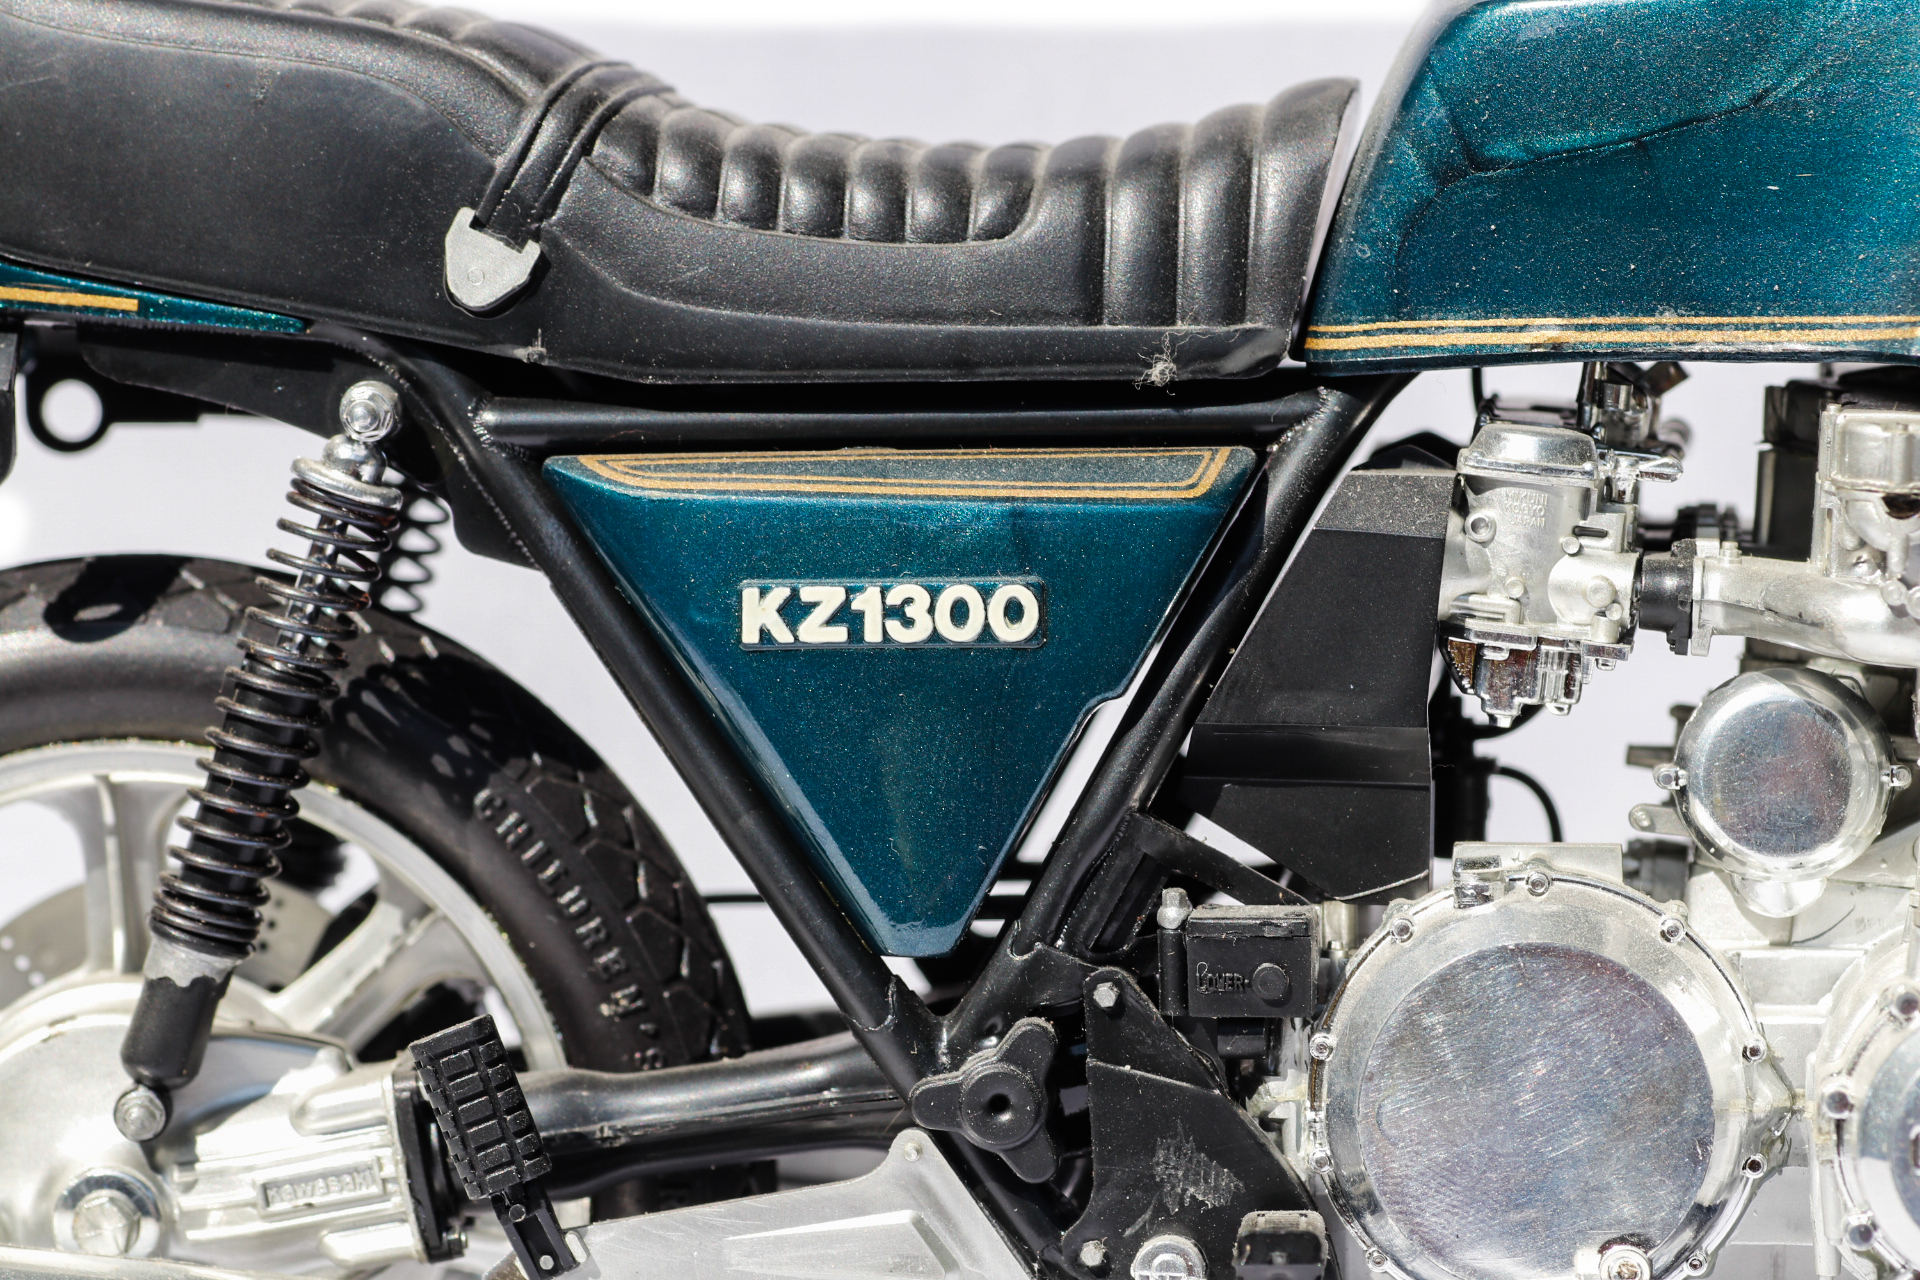 Nitto Kawasaki KZ1300